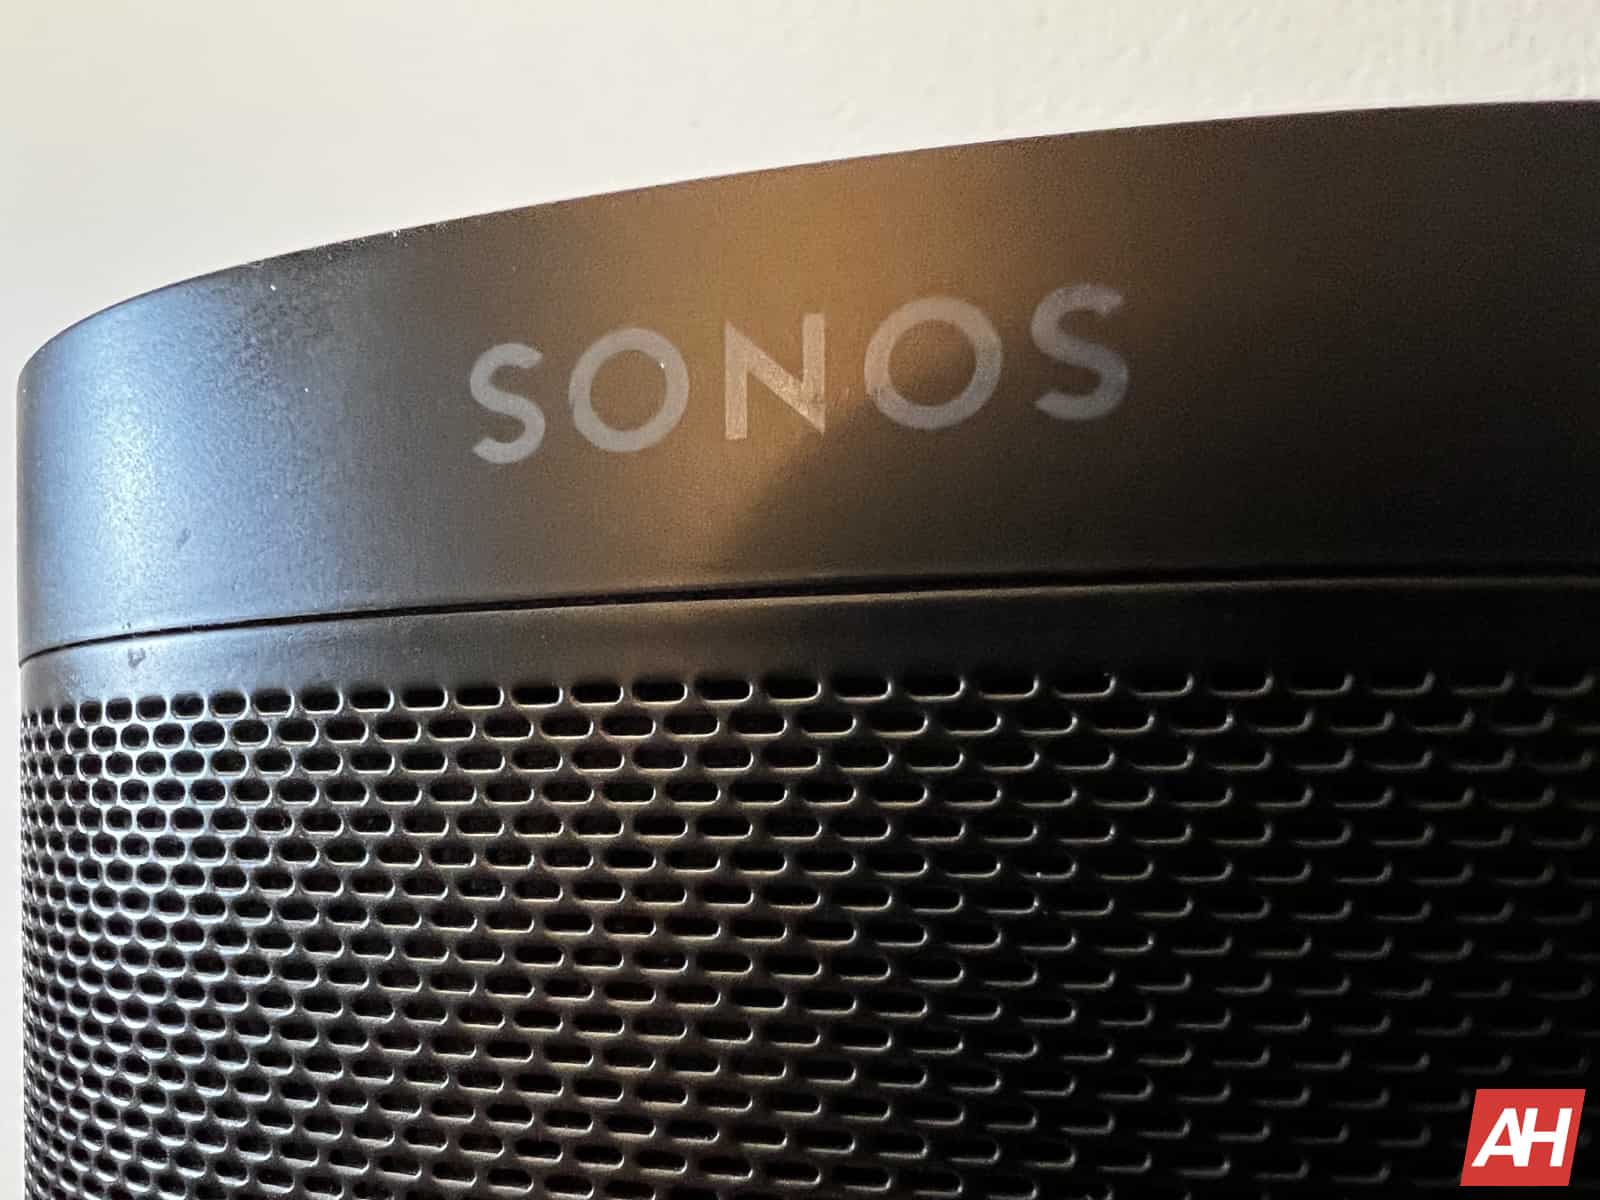 Sonos Ace-Kopfhörer mit Magnetkissen sind zusammen mit den Preisen durchgesickert